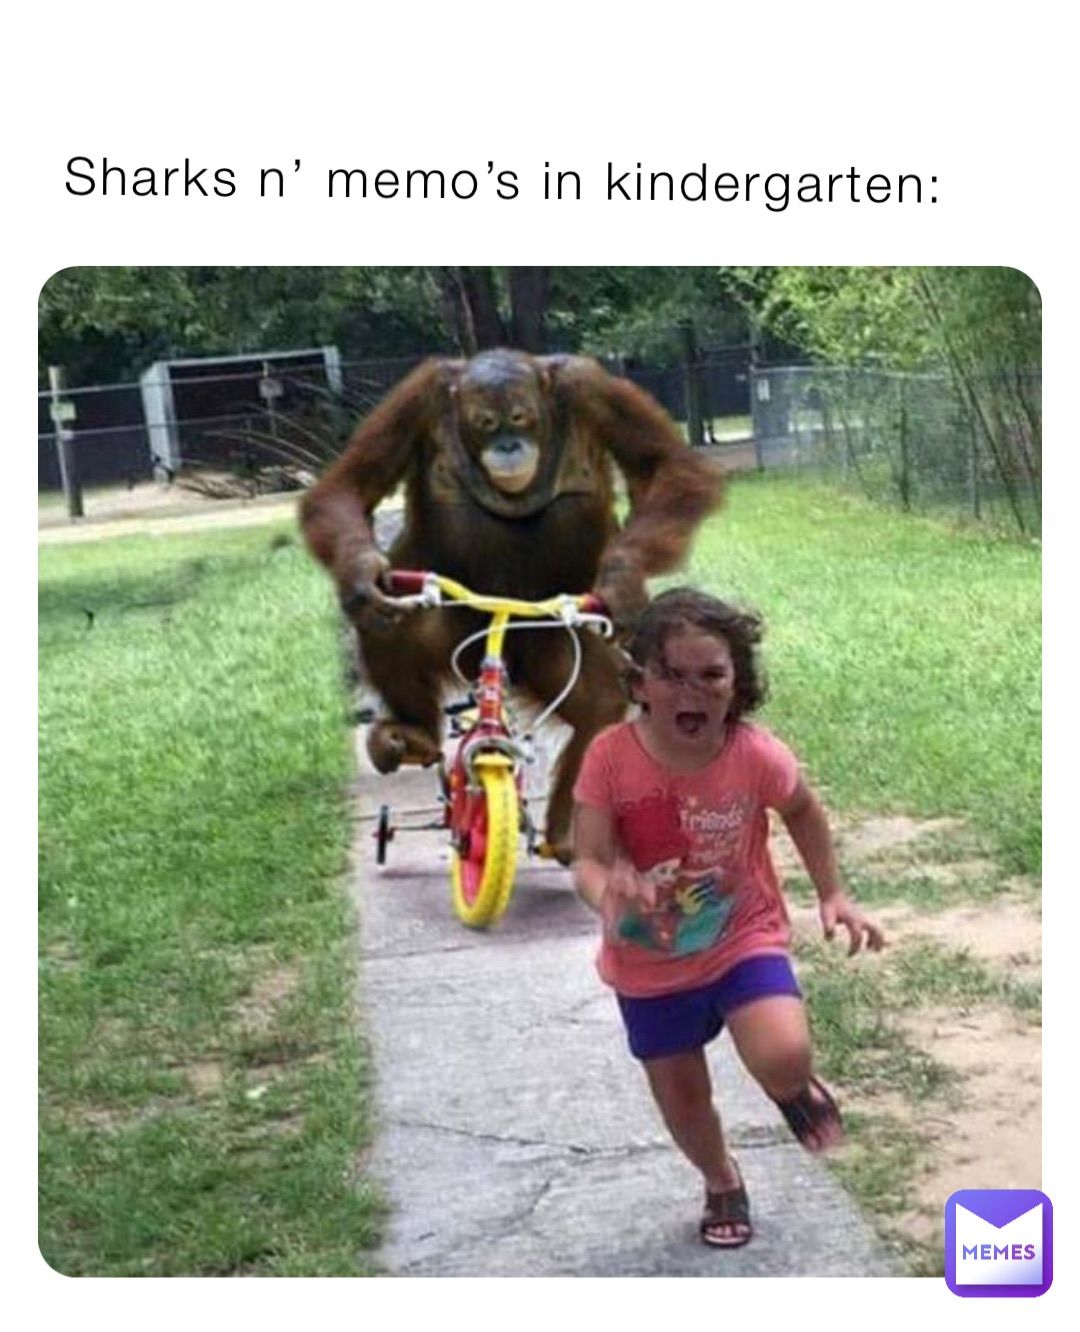 Sharks n’ memo’s in kindergarten: